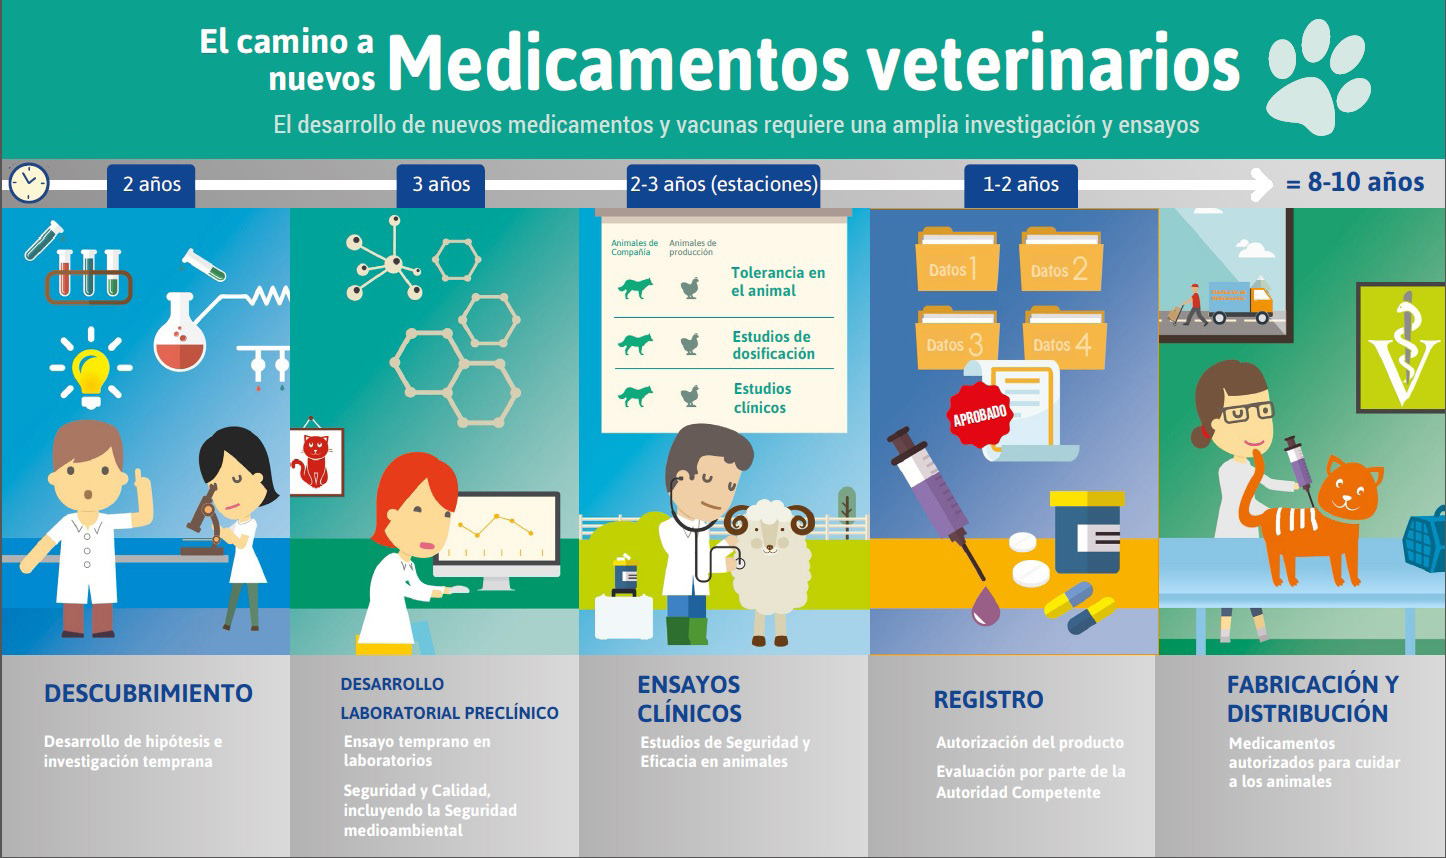 El camino a los nuevos MEDICAMENTOS VETERINARIOS, SANIDAD ANIMAL, Vet+i, vetresponsable